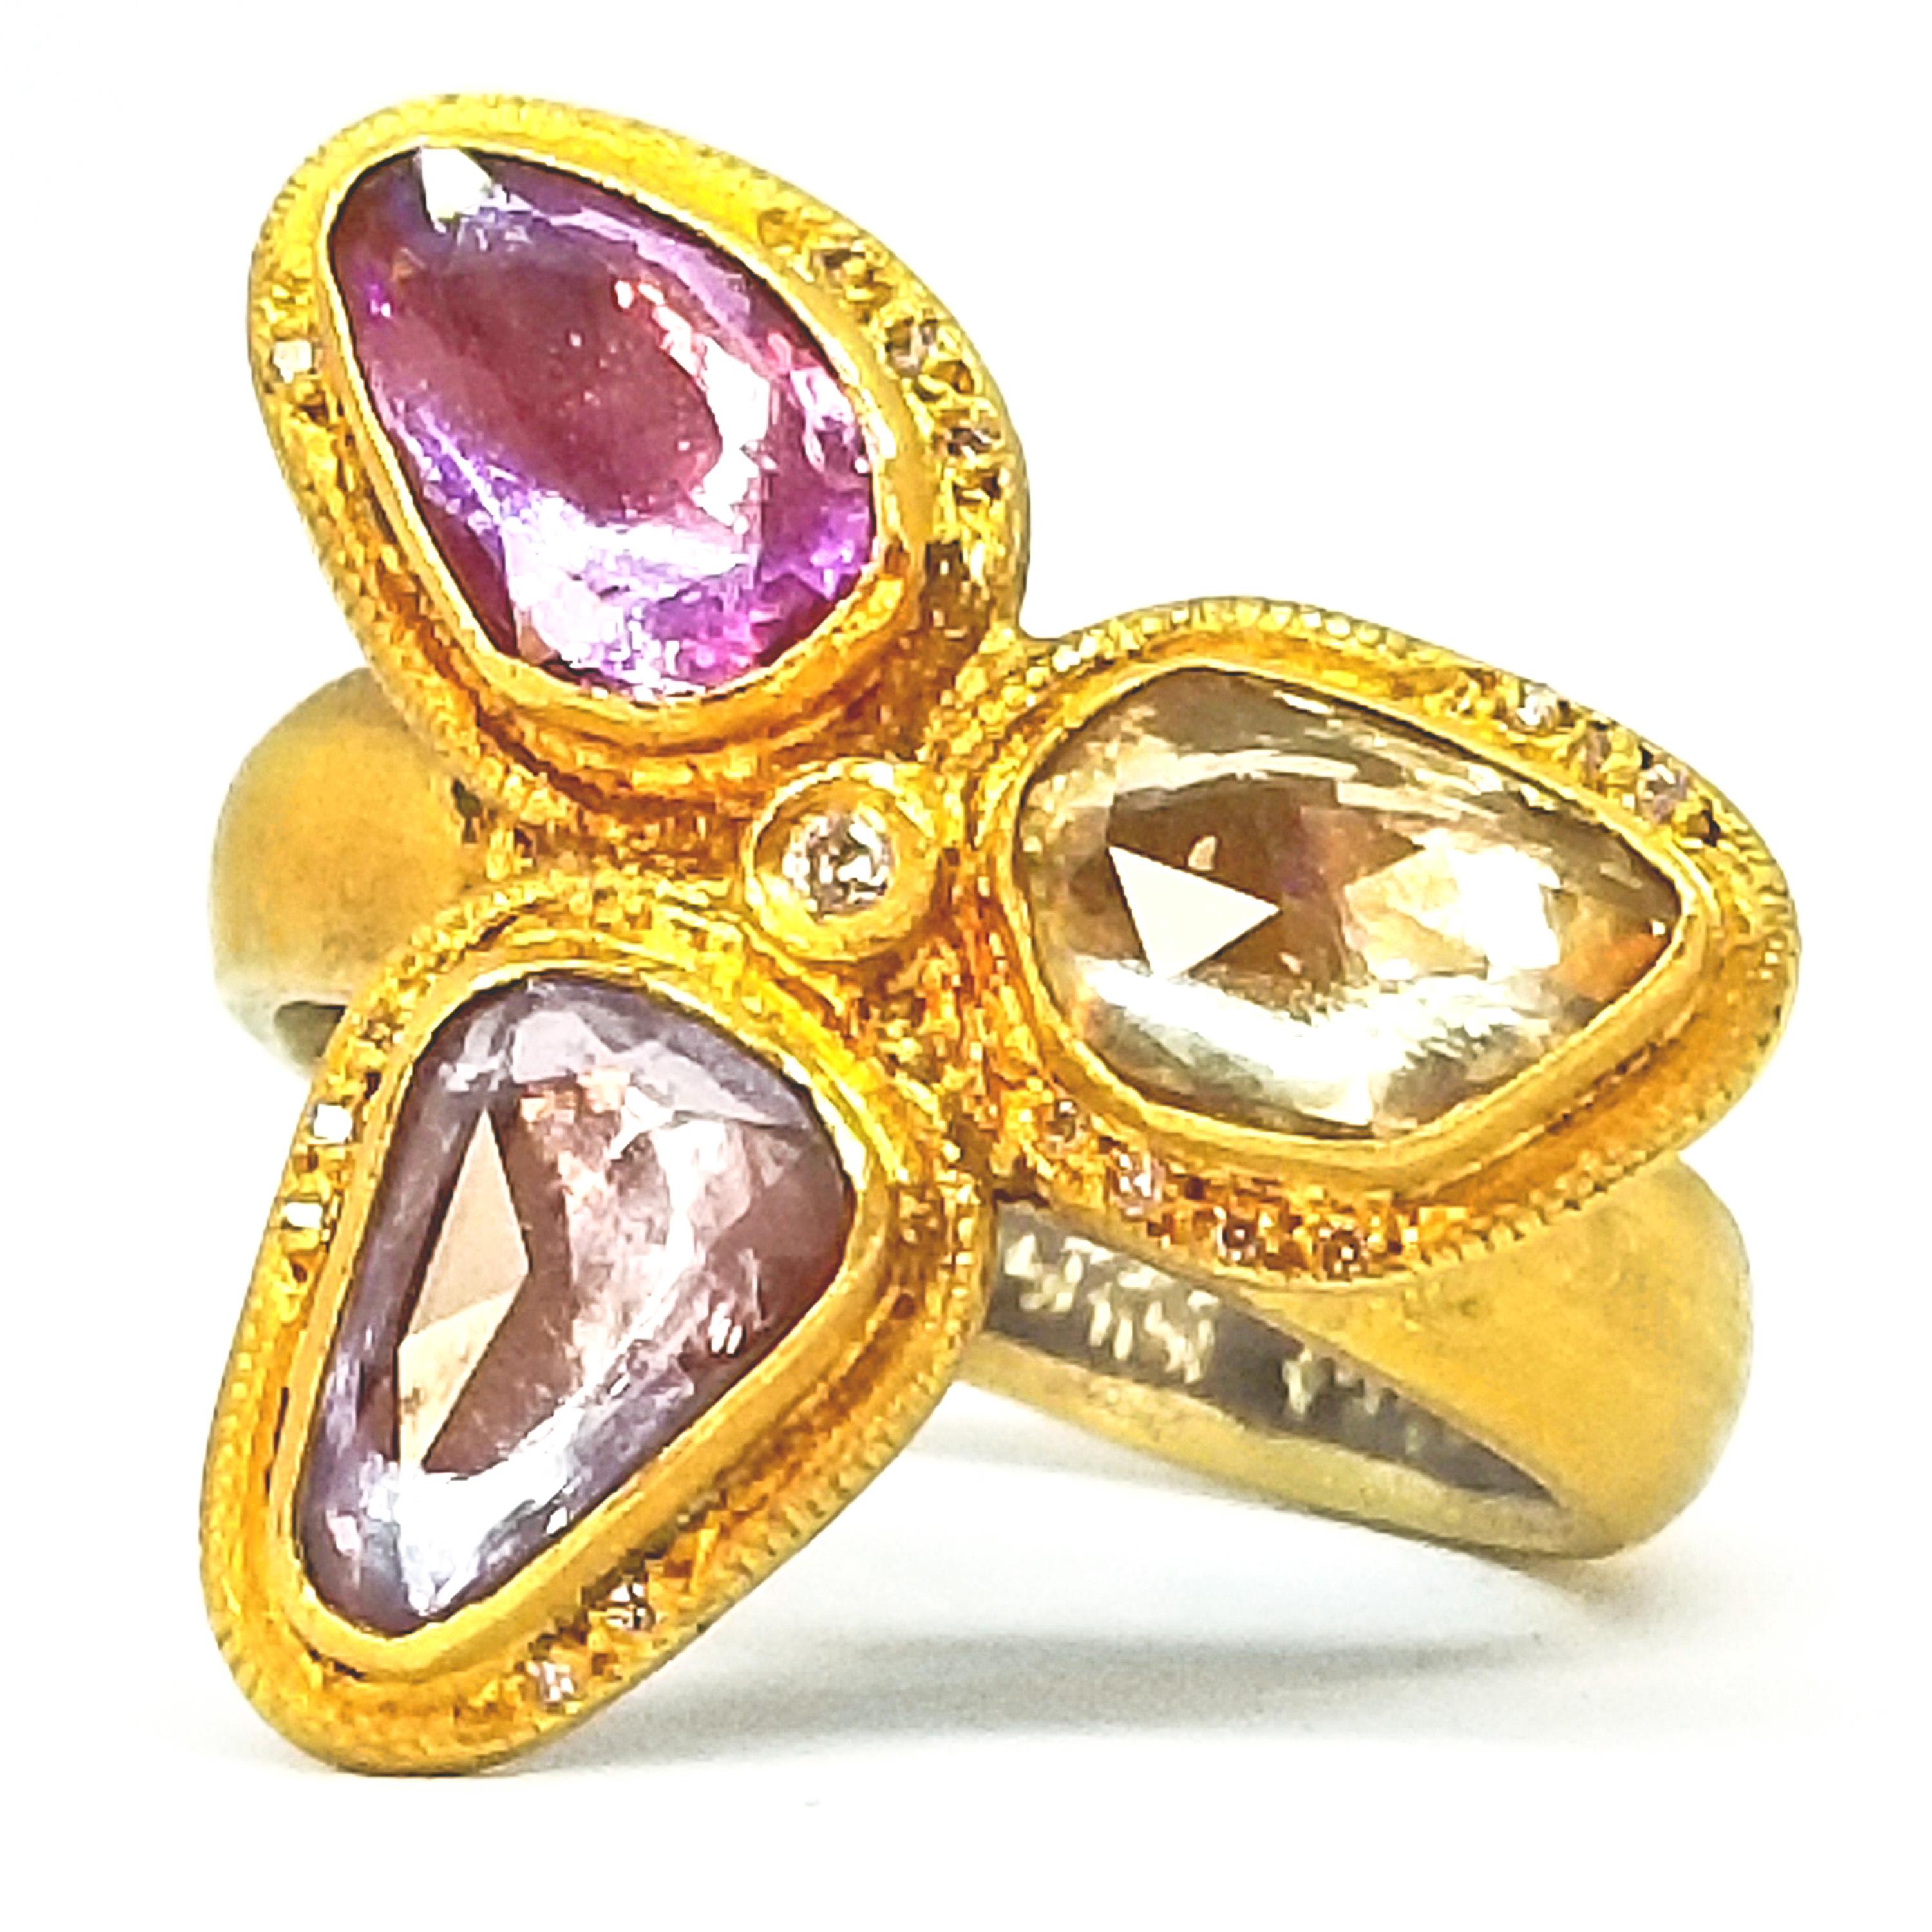 Kurtulan Bague à fleurs en diamants et saphirs taille rose de 2,72 carats, faite à la main et signée 24 carats